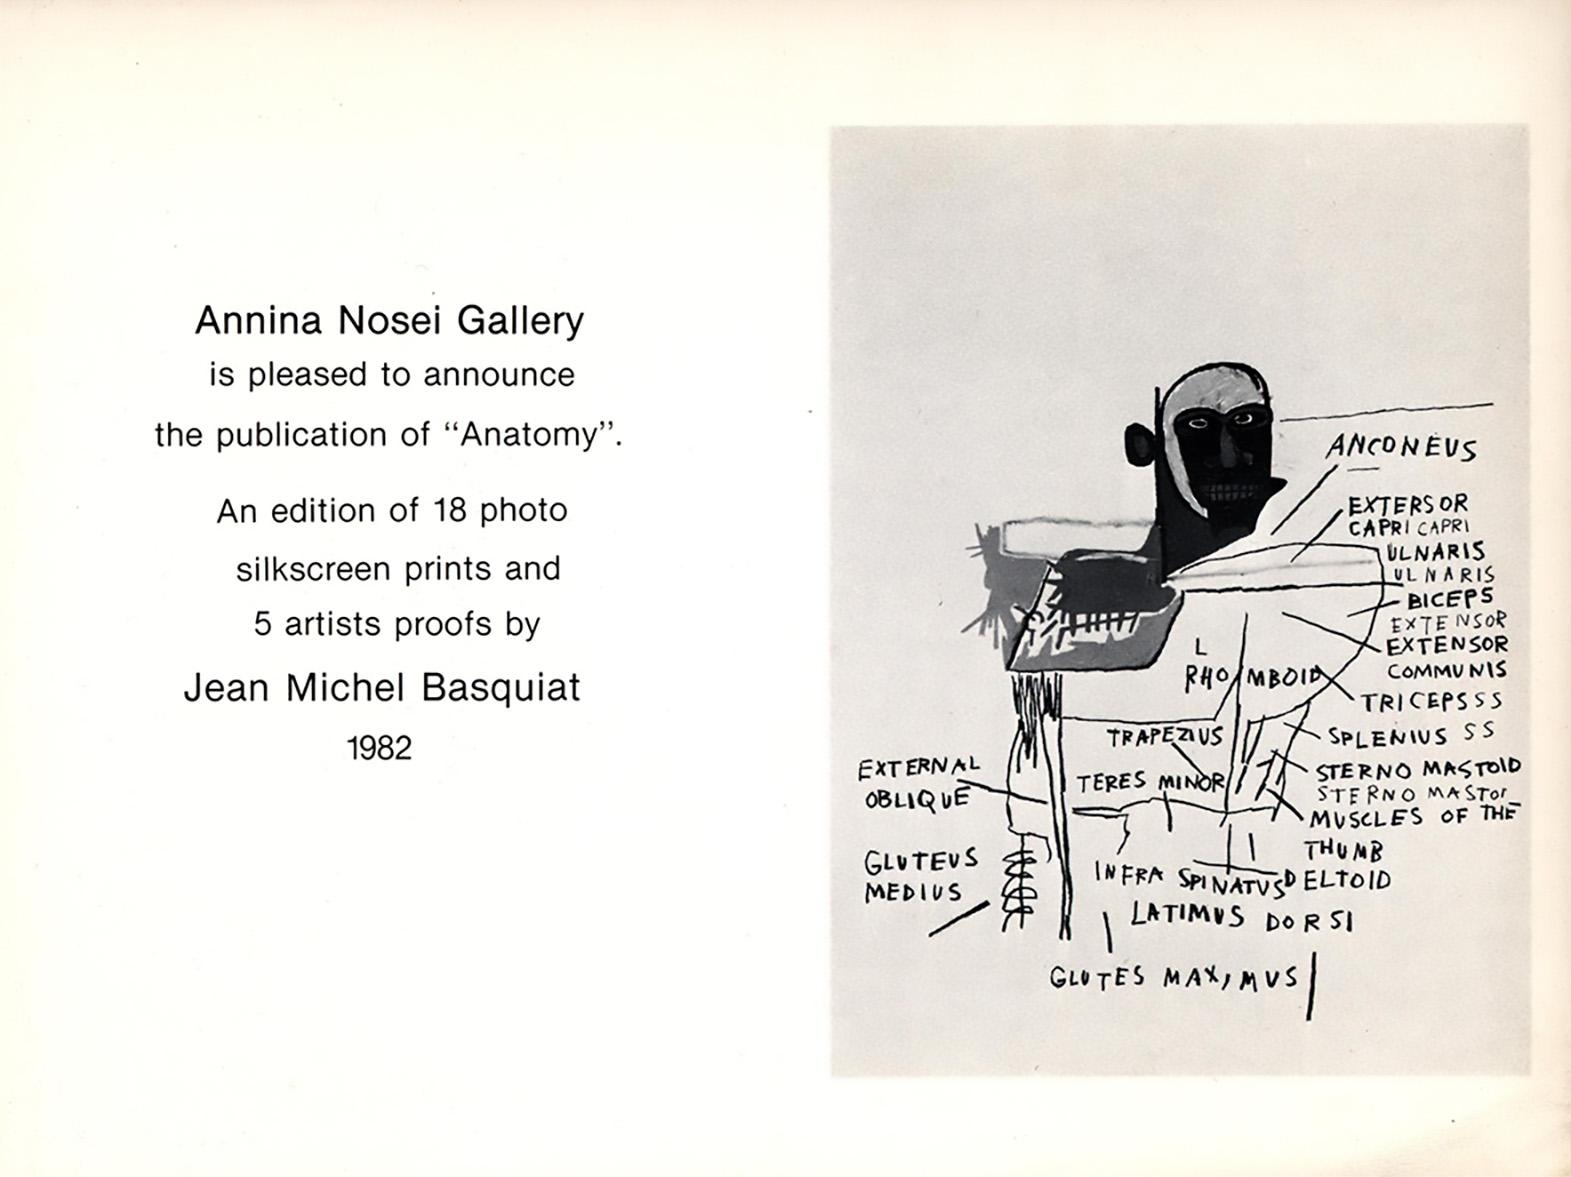 Jean-Michel Basquiat, Annina Nosei Gallery, New York, 1982-1988 :
Un ensemble de 2 rares faire-part originaux vintage de Basquiat de 1982 & 1988, respectivement publiés à l'occasion de :  

- Basquiat Anatomy